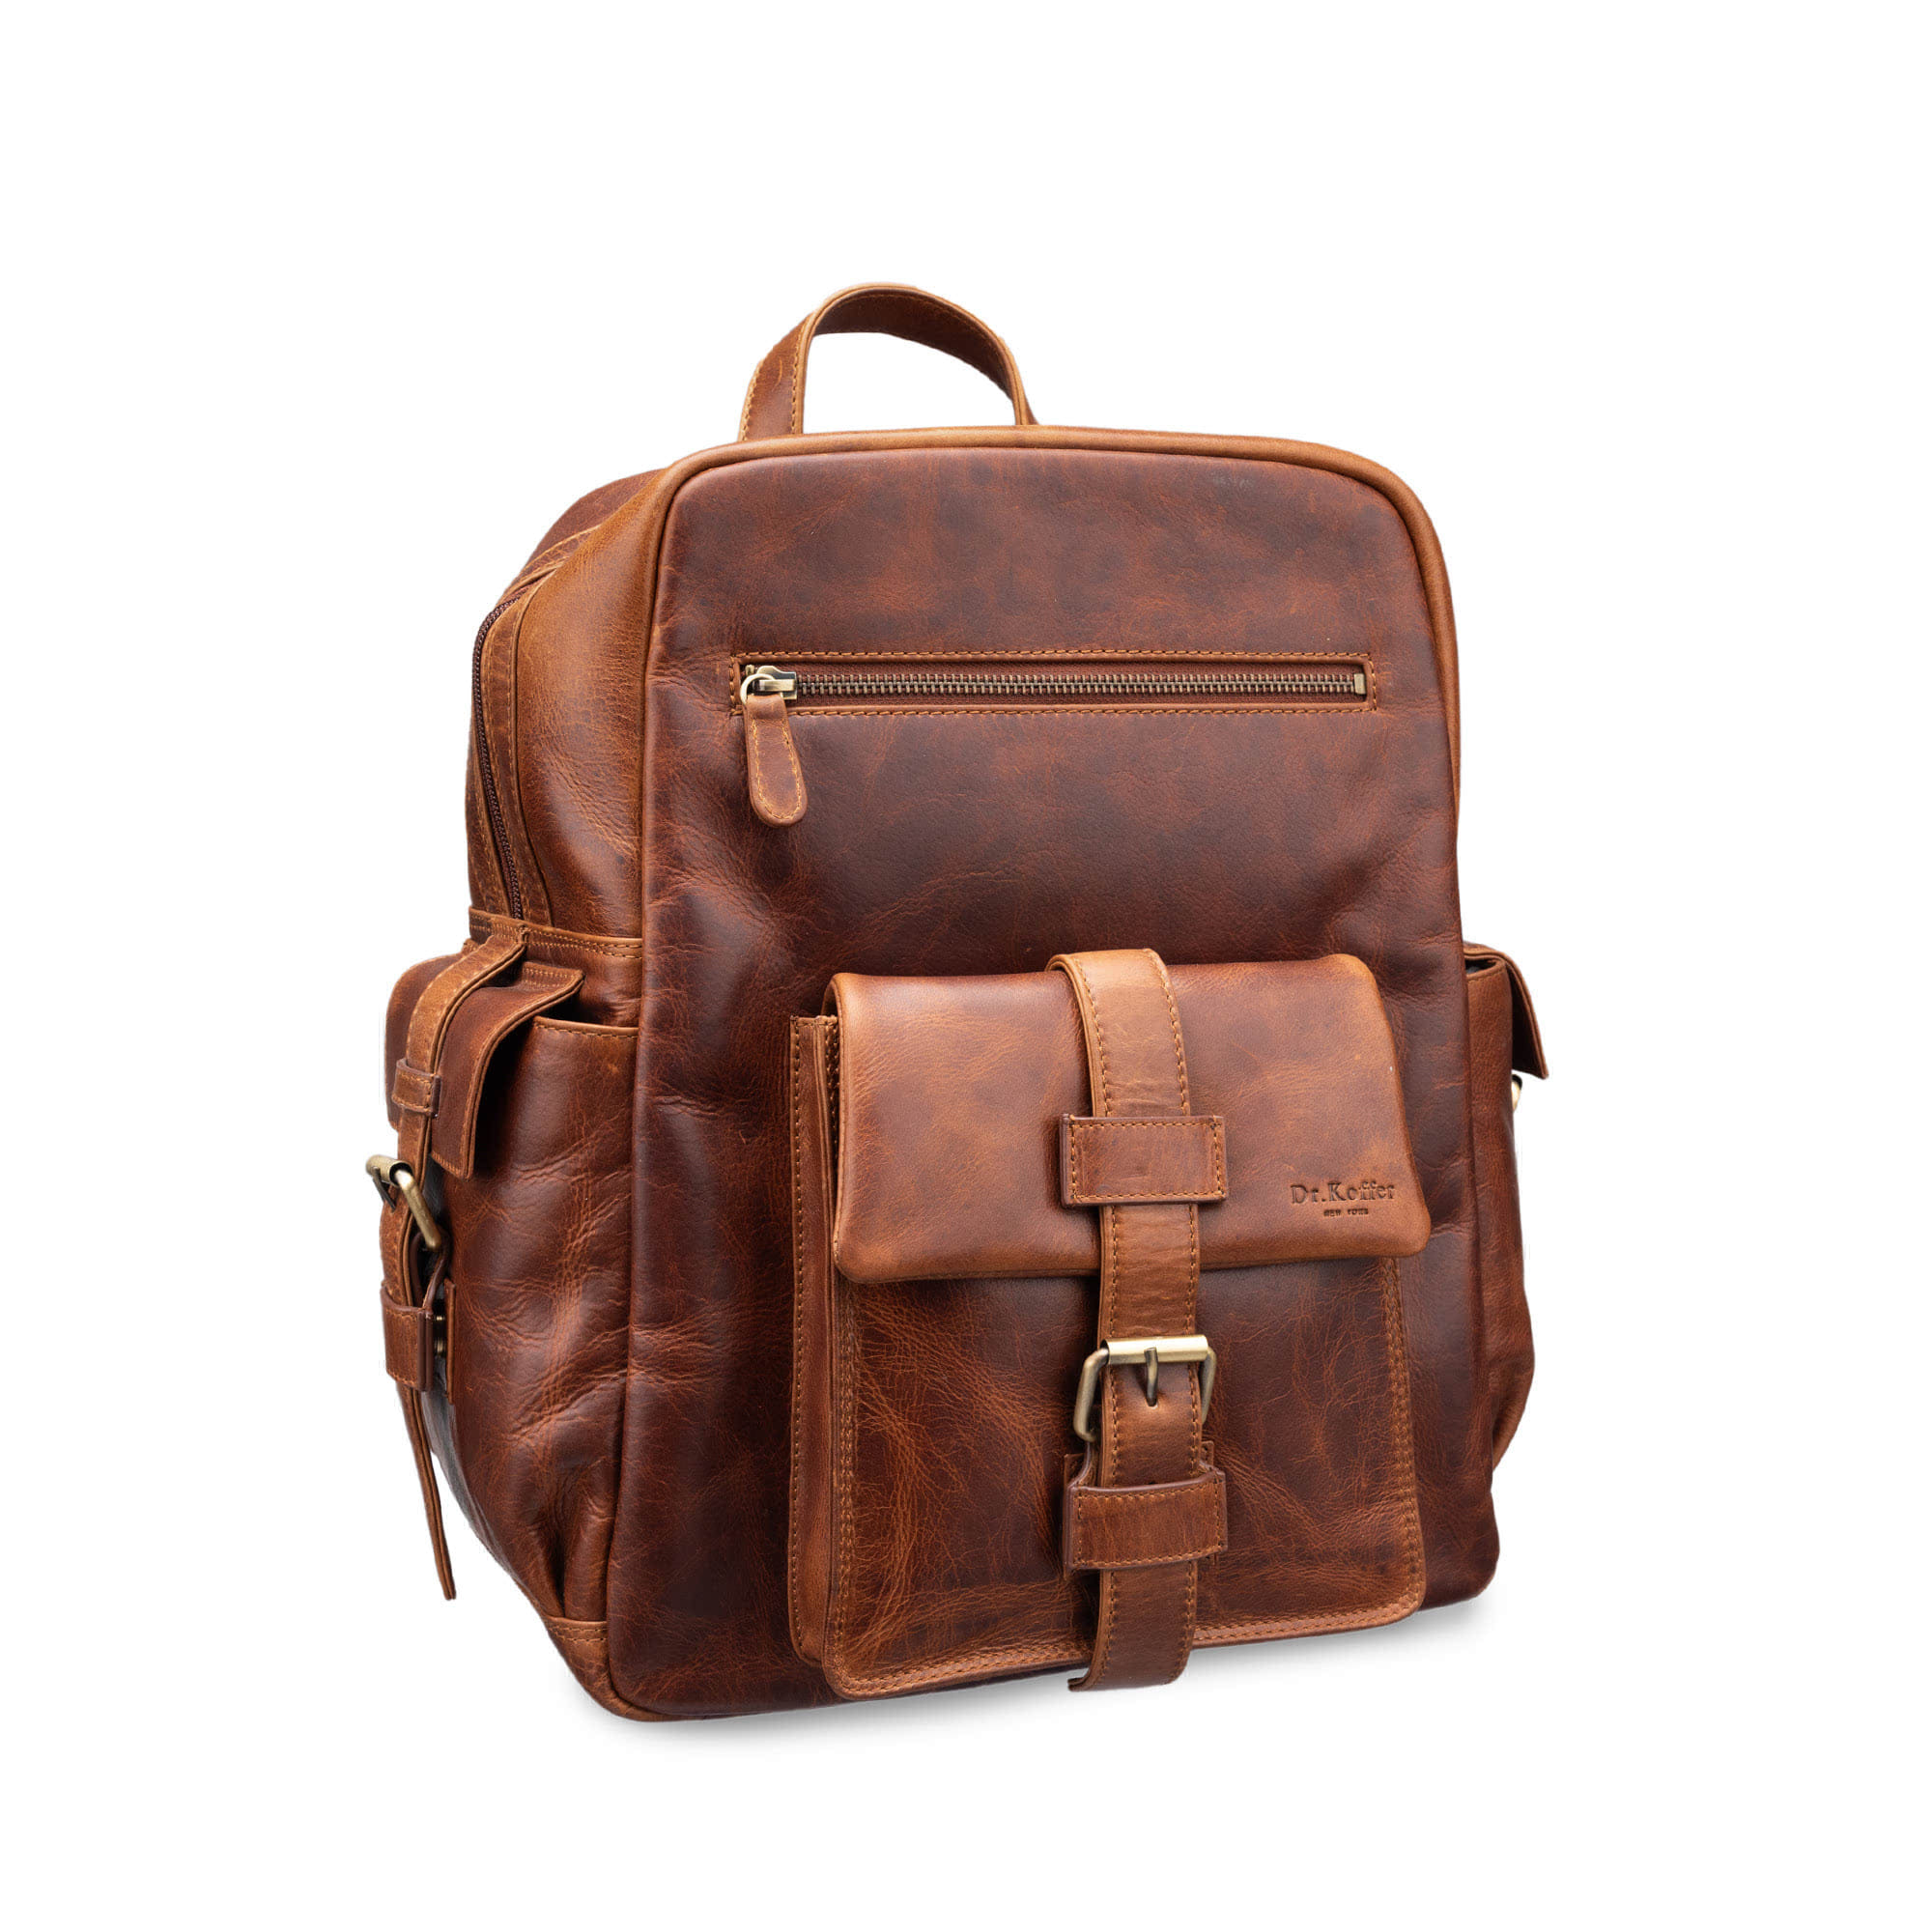 Др.Коффер M402719-109-05 рюкзак, цвет коричневый - фото 1